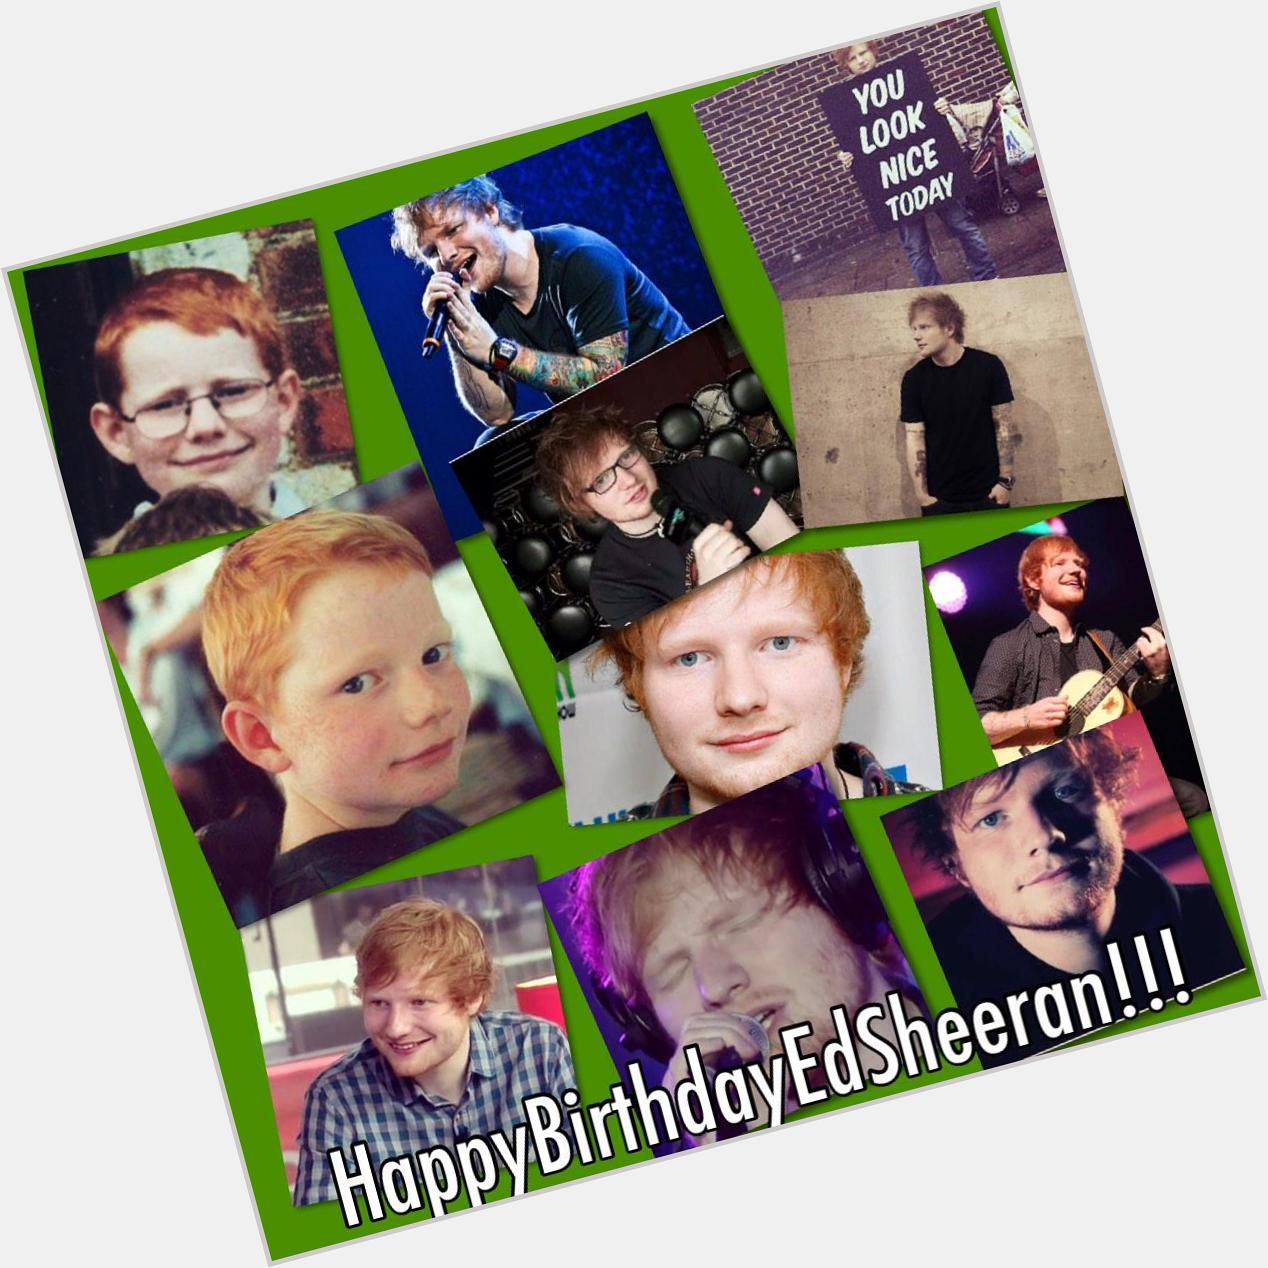 Happy Birthday Ed Sheeran! 